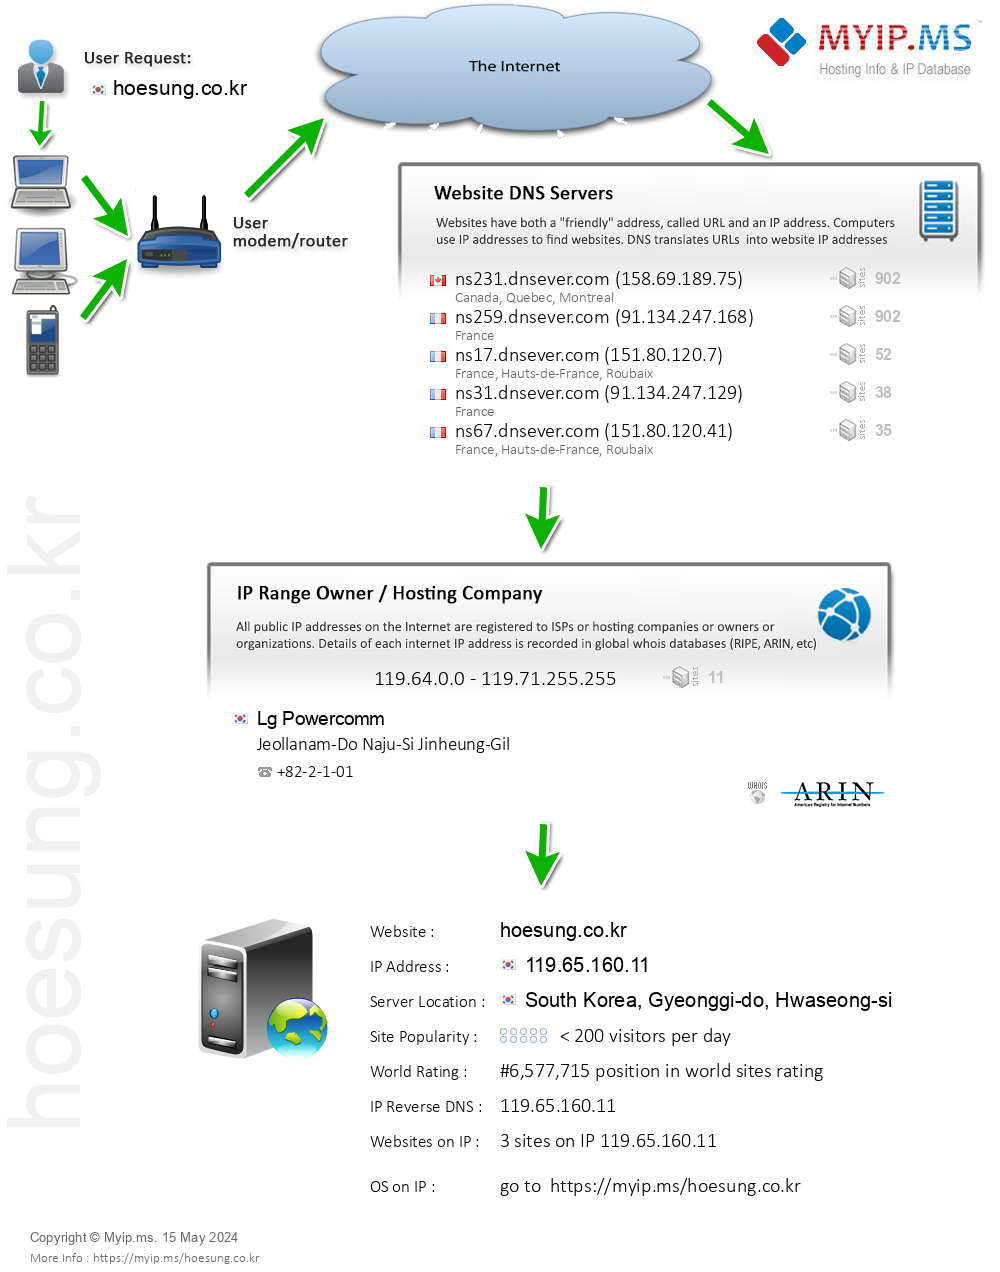 Hoesung.co.kr - Website Hosting Visual IP Diagram